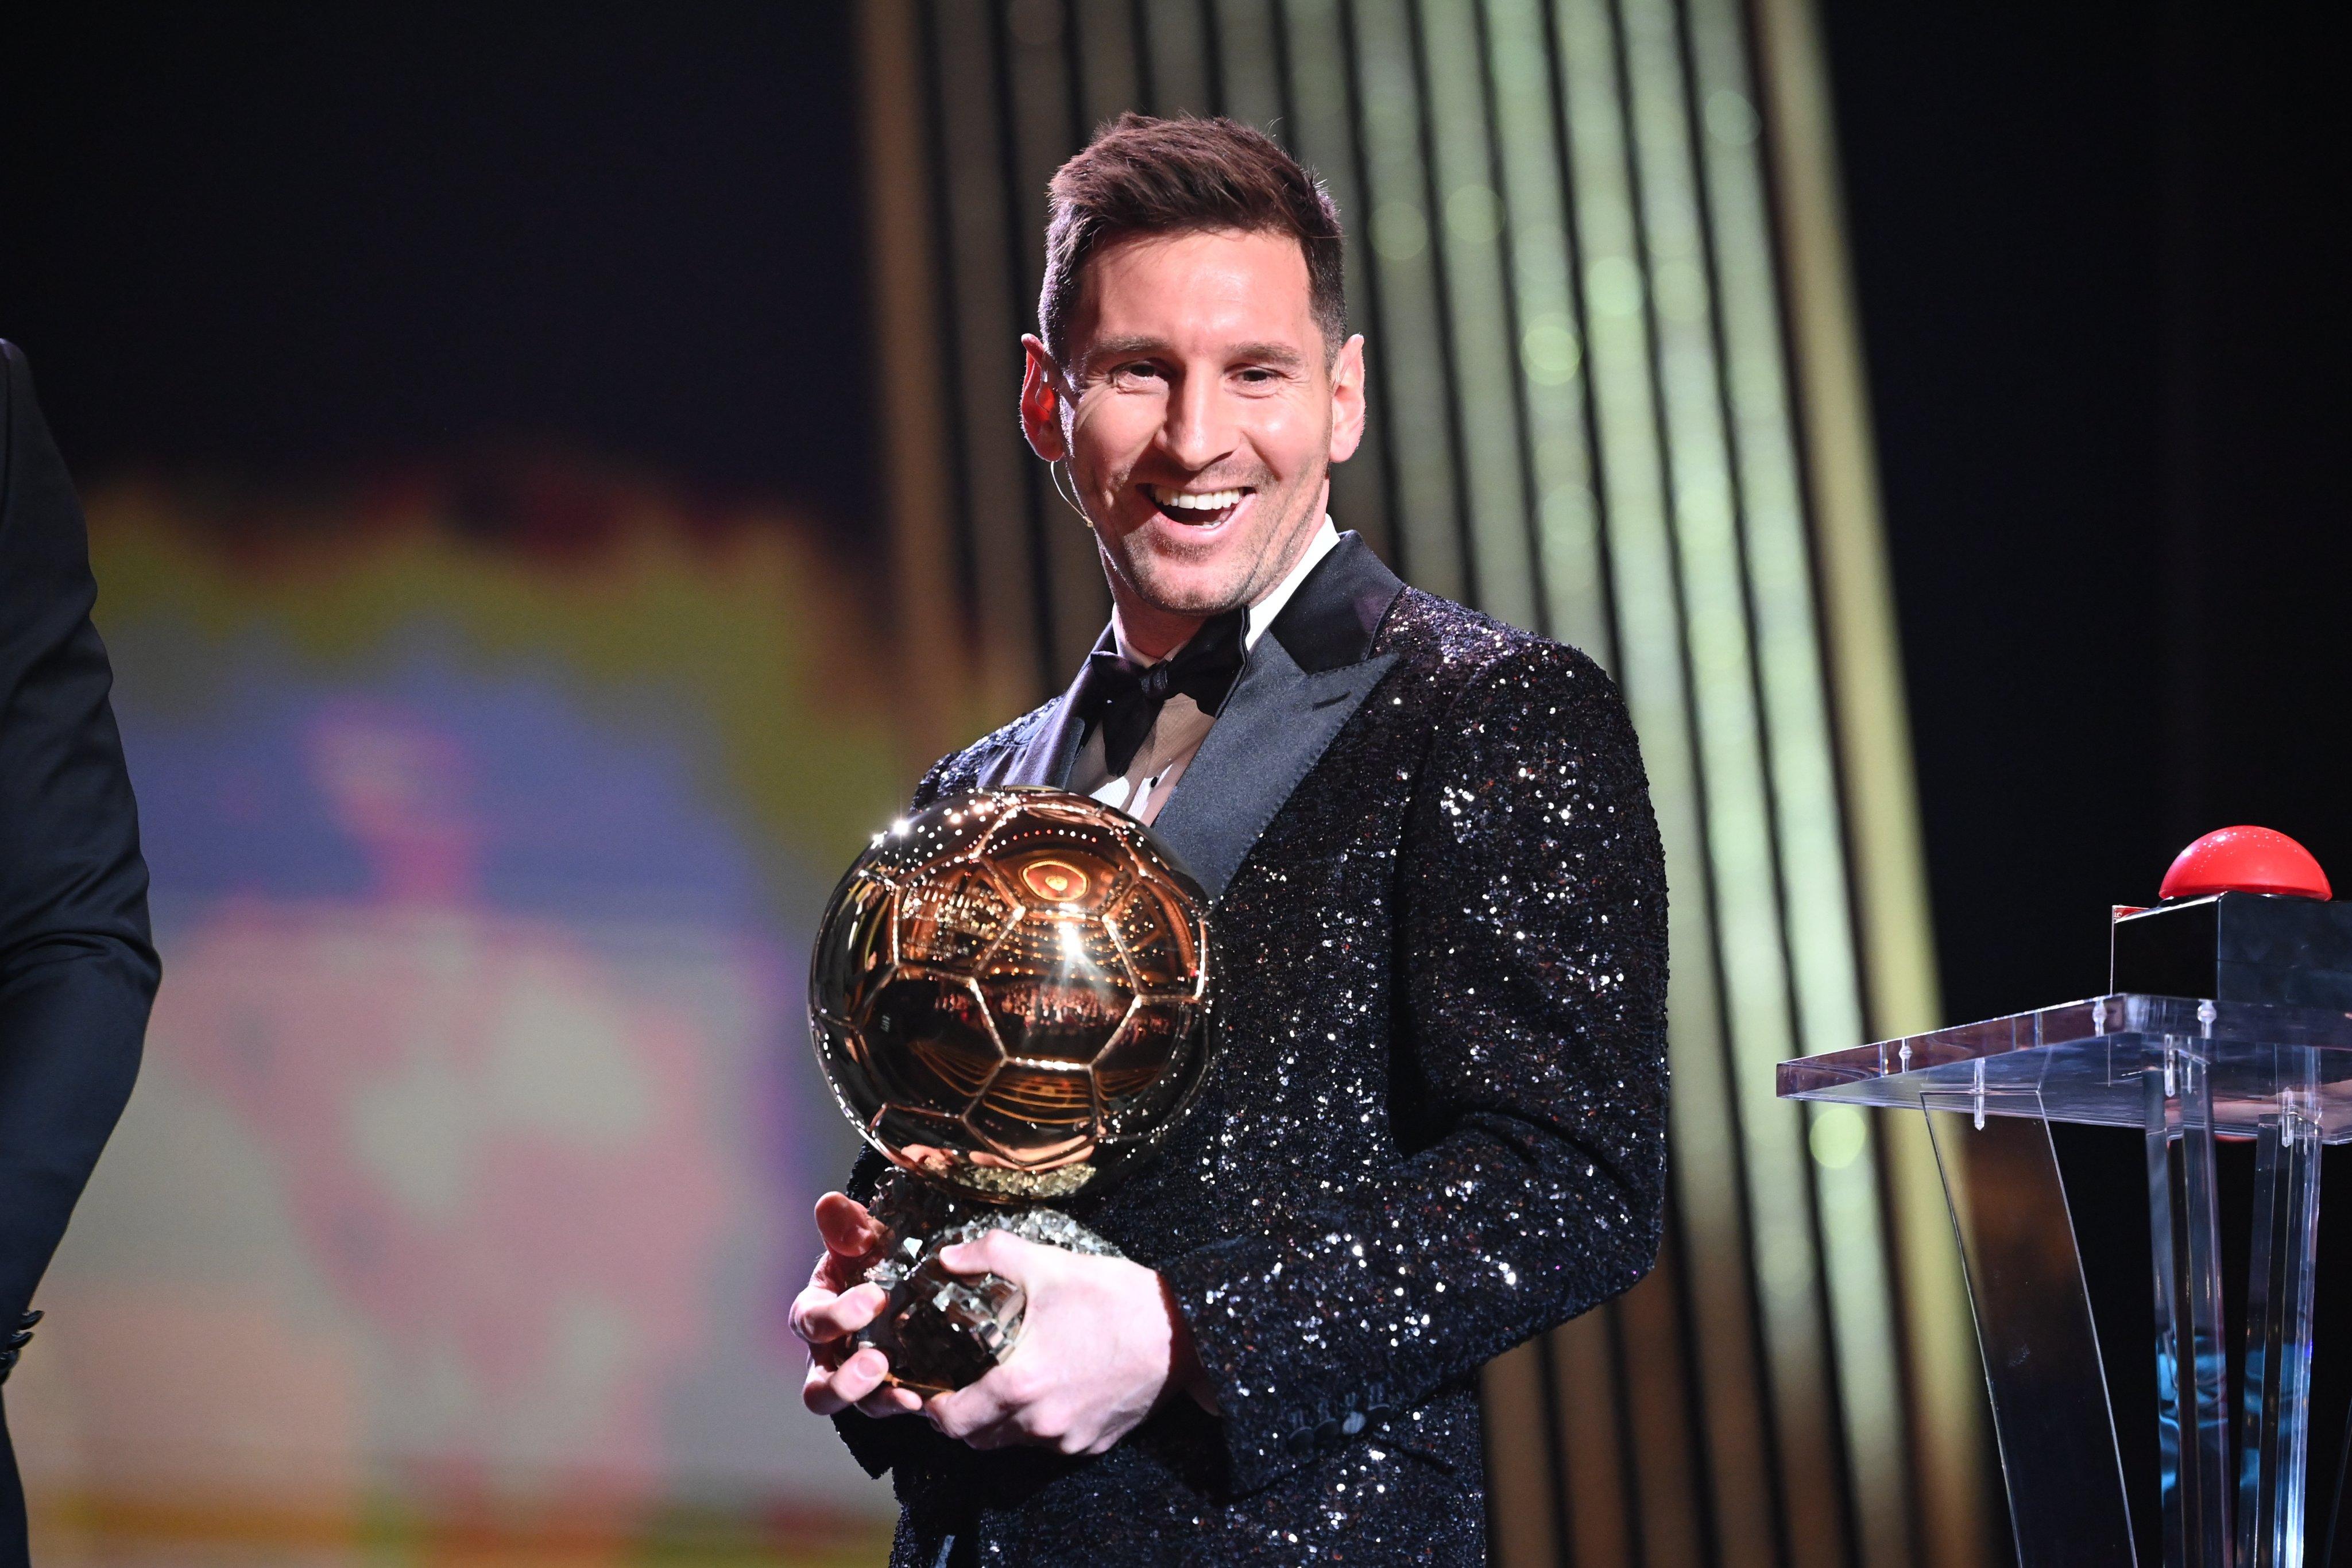 Ai là fan cuồng của Lionel Messi thì chắc chắn không thể bỏ qua bức ảnh Quả bóng Vàng Messi đầy hào quang và danh giá. Chỉ trong một cú chạm bóng, người hùng của Barca đã trở thành chủ nhân của giải thưởng danh giá này liên tiếp 7 năm đầy ấn tượng.